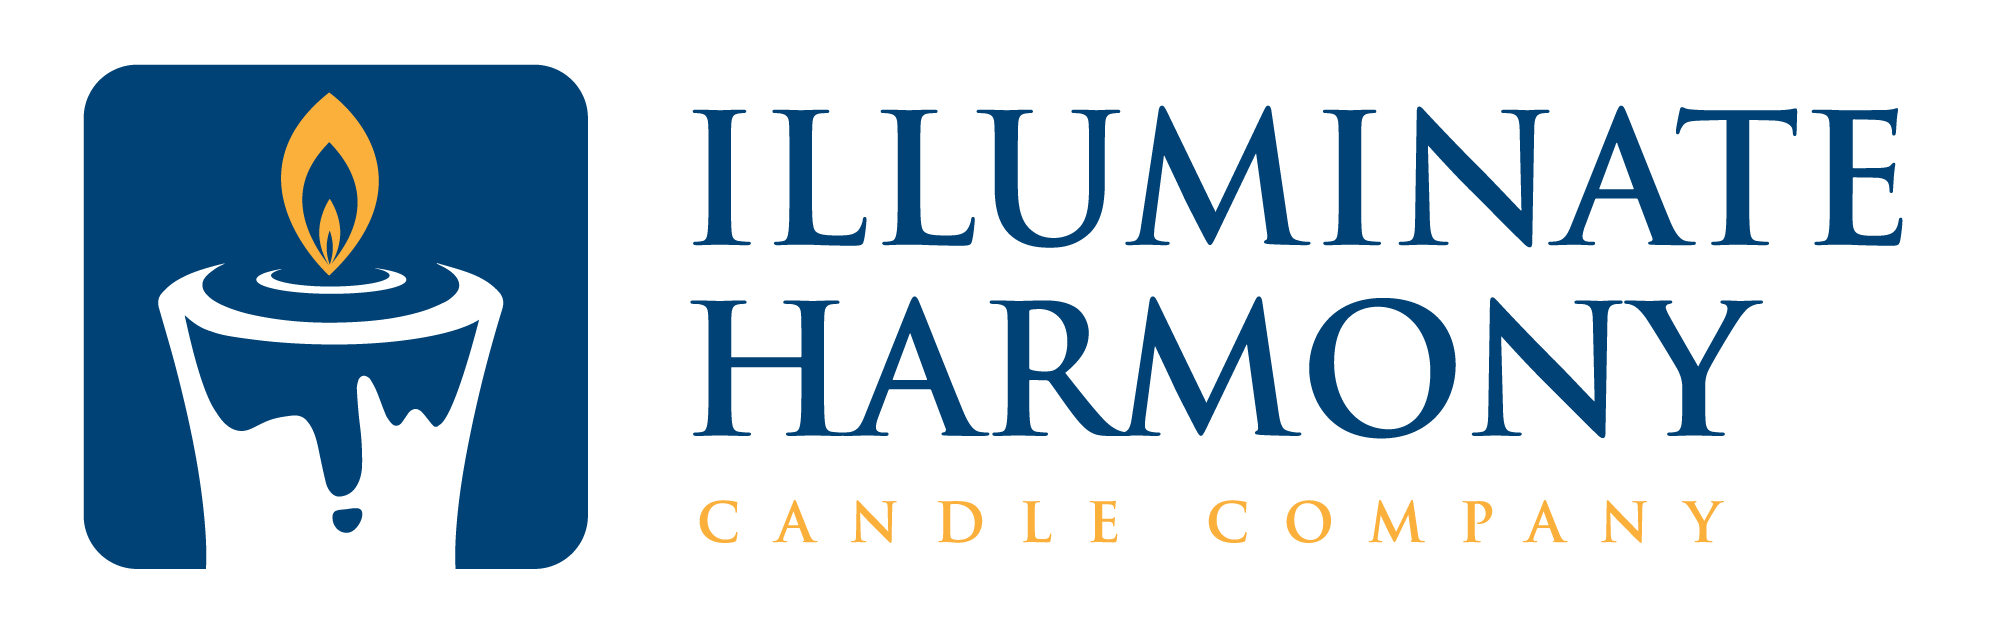 Illuminate Harmony Candle Company